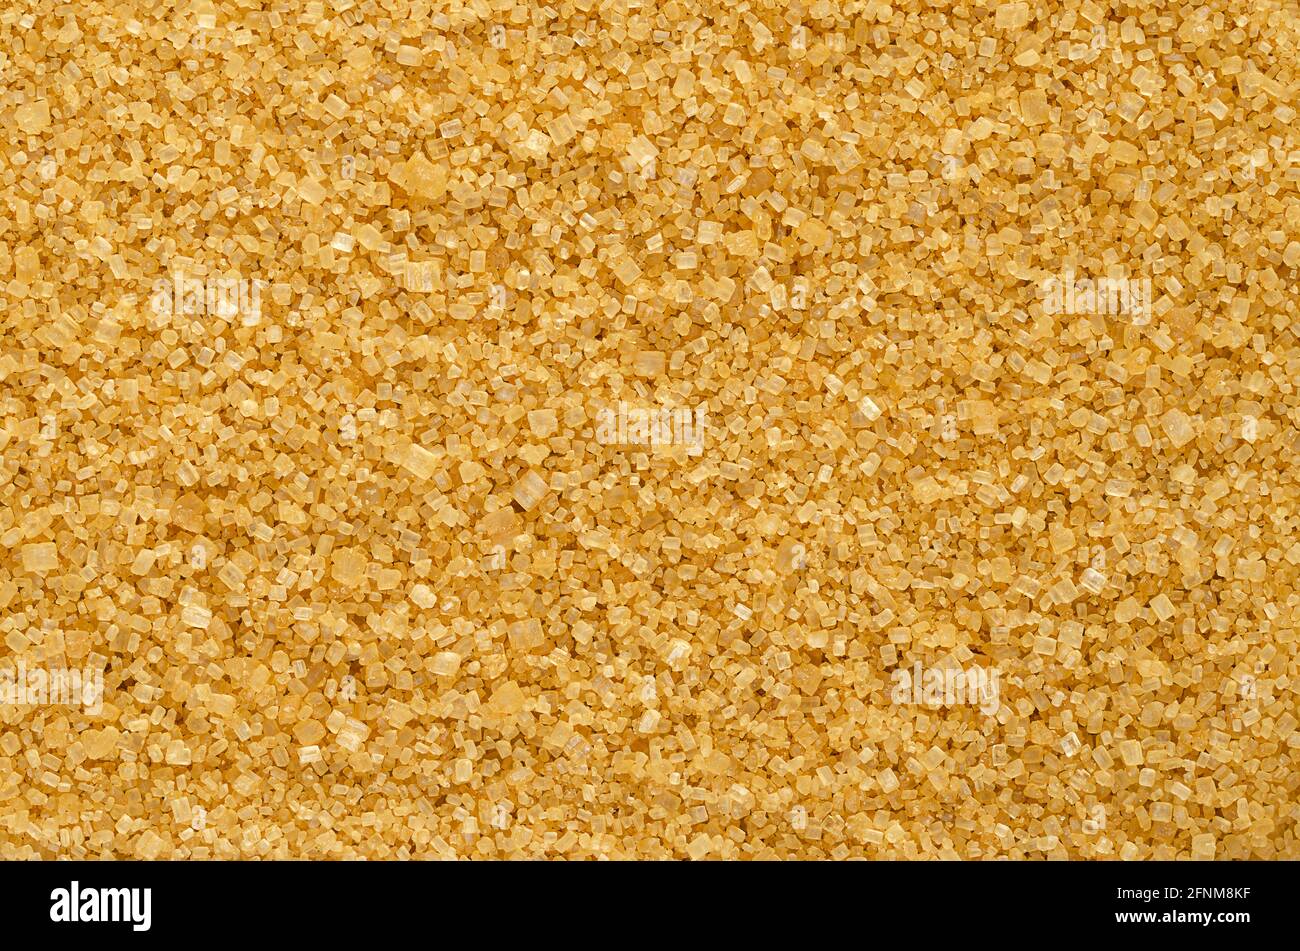 Brauner Demerara-Zucker, Hintergrund, von oben. Grober, kristalliner, natürlicher und roher Zucker, ein Sucrose-Zucker mit ausgeprägter gelb-brauner Farbe. Stockfoto